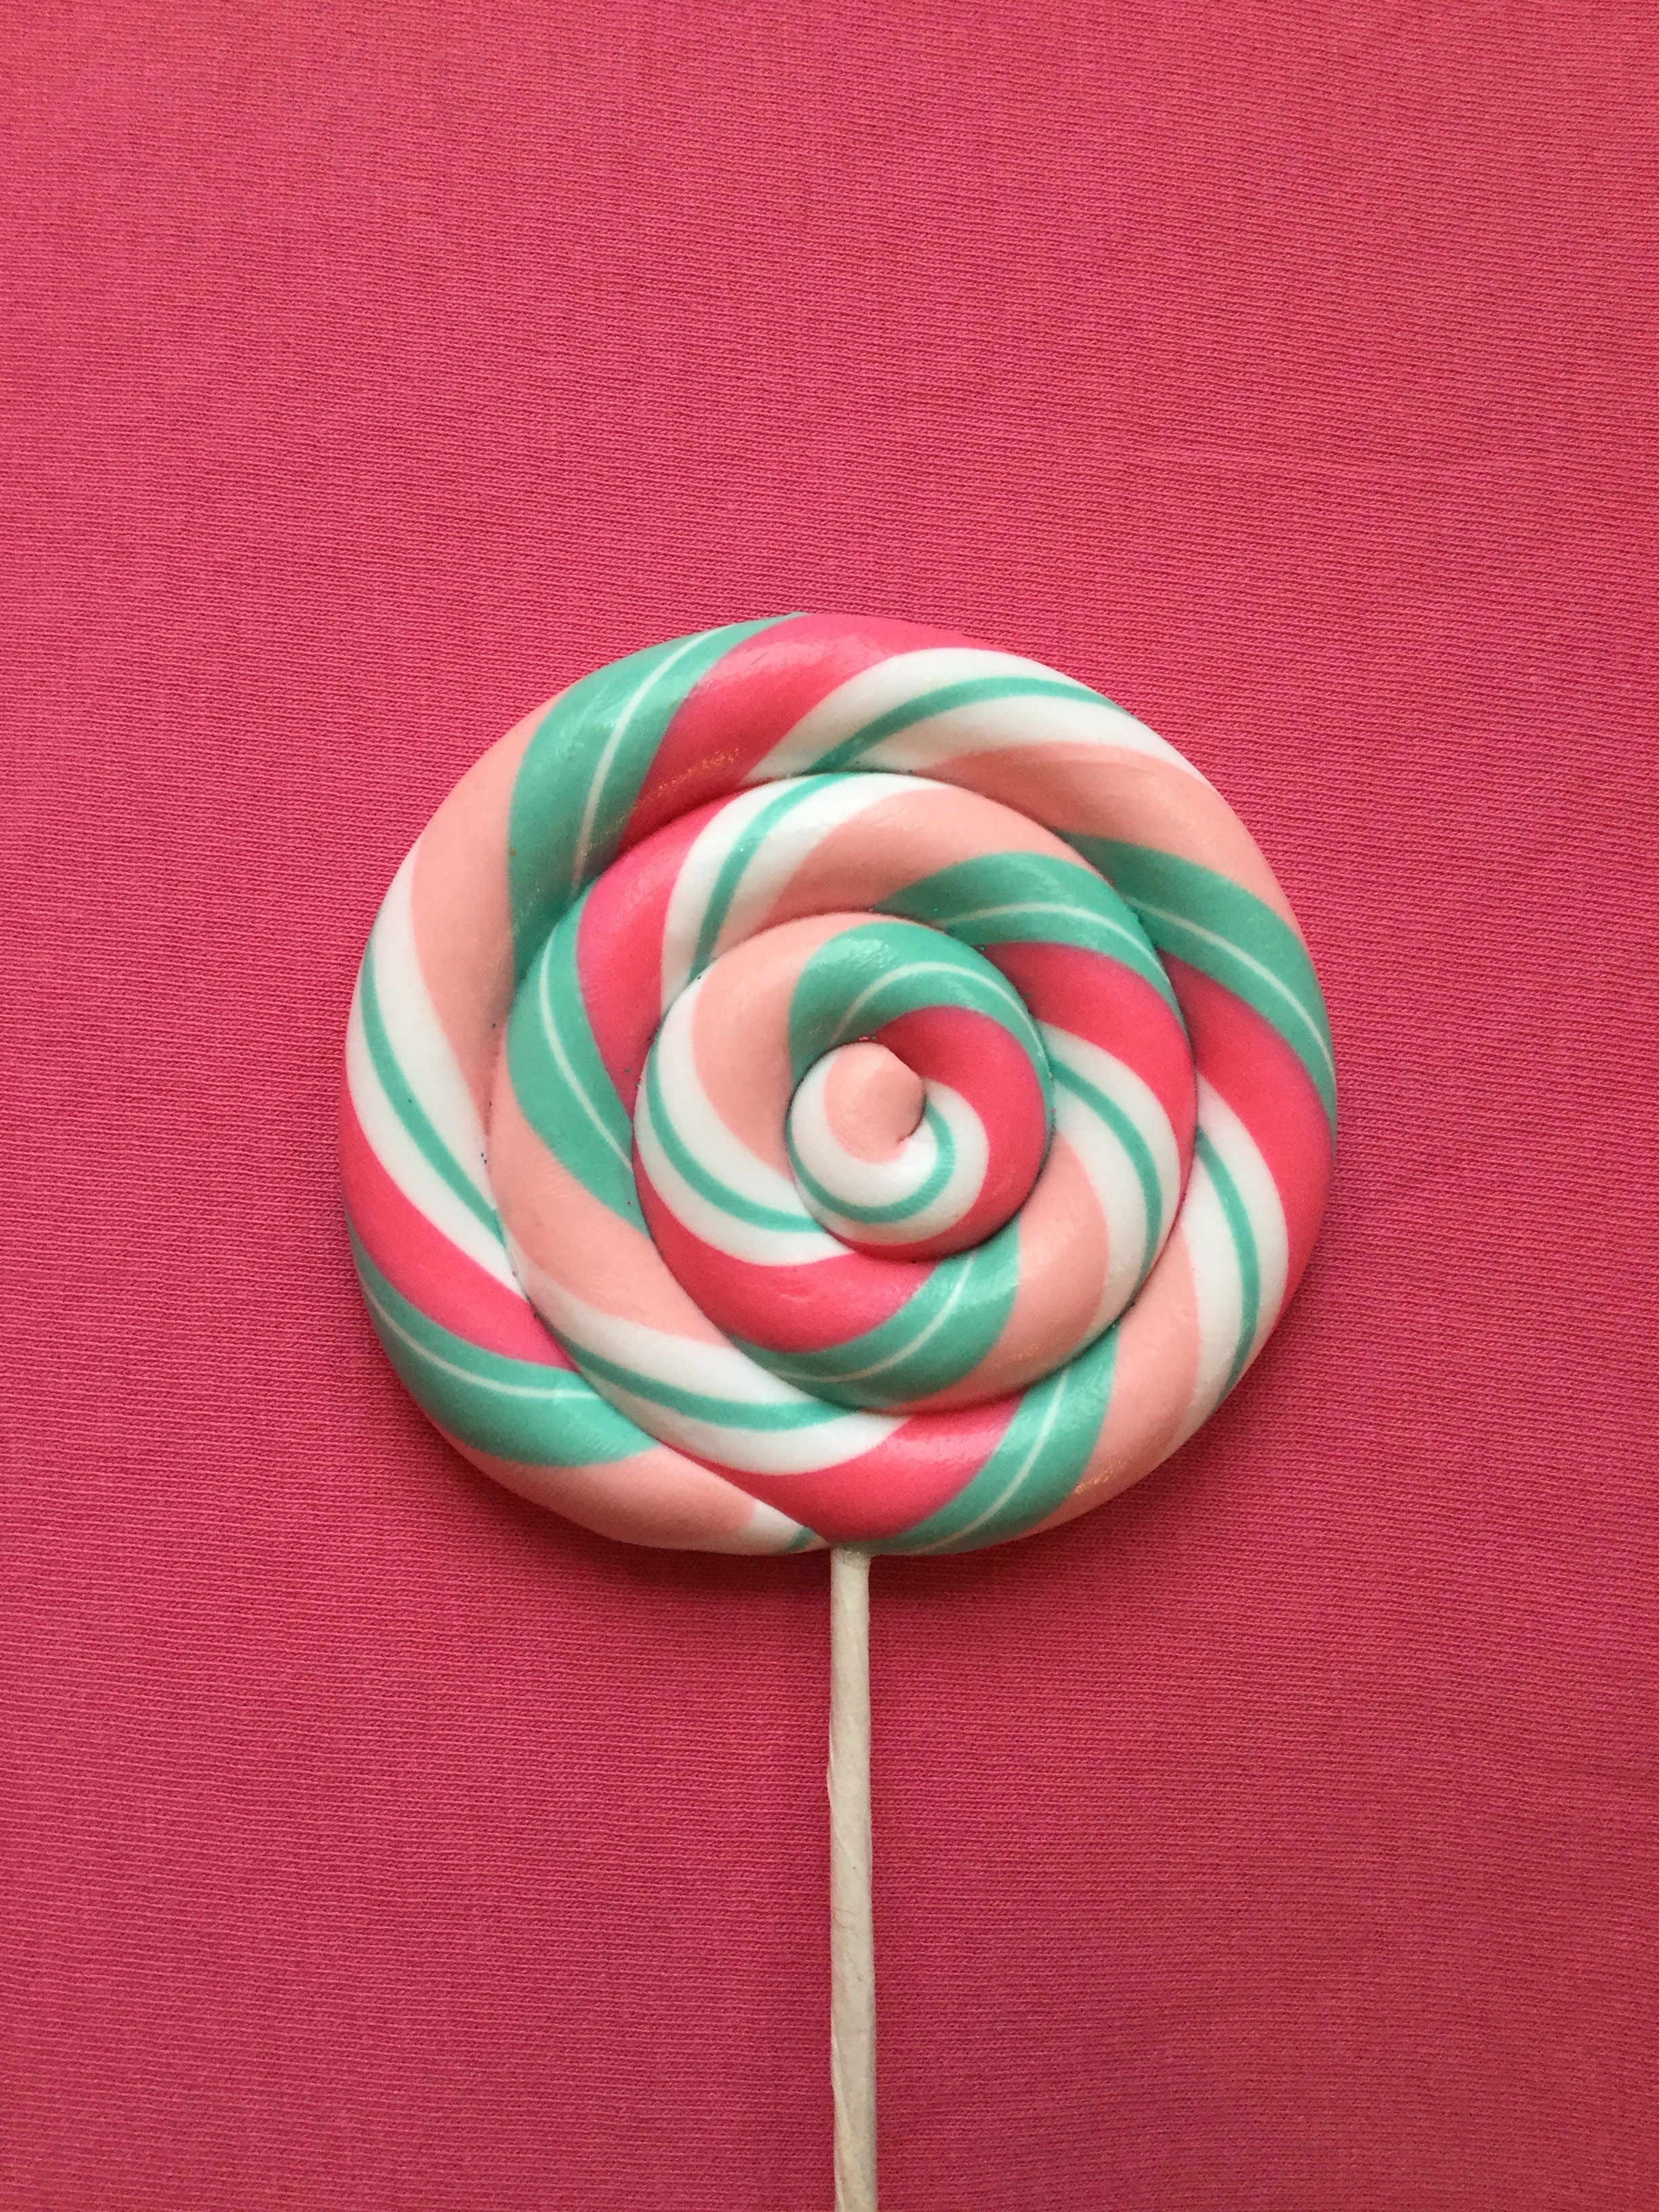 Die Lollipops